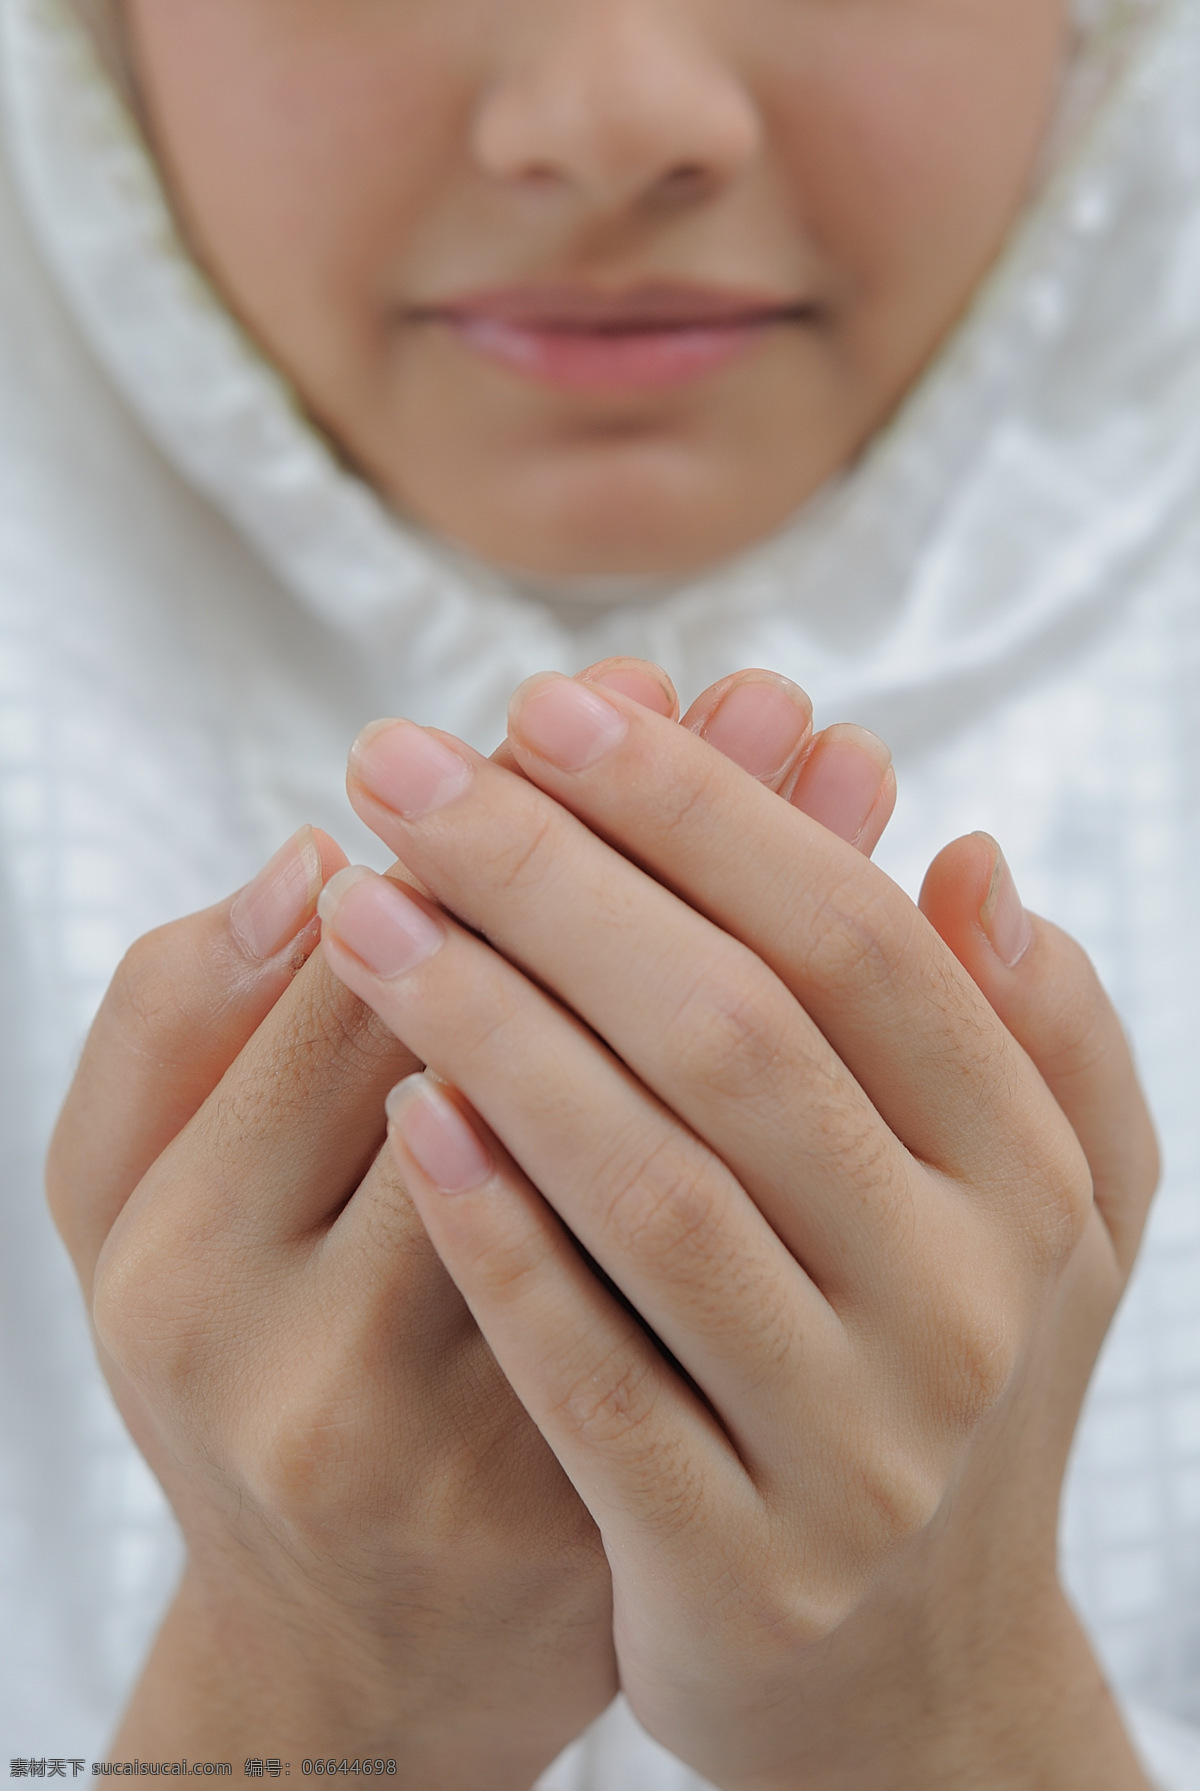 祈祷 美女 双手 手势 女人 眼睛 外国人物 人体器官图 人物图片